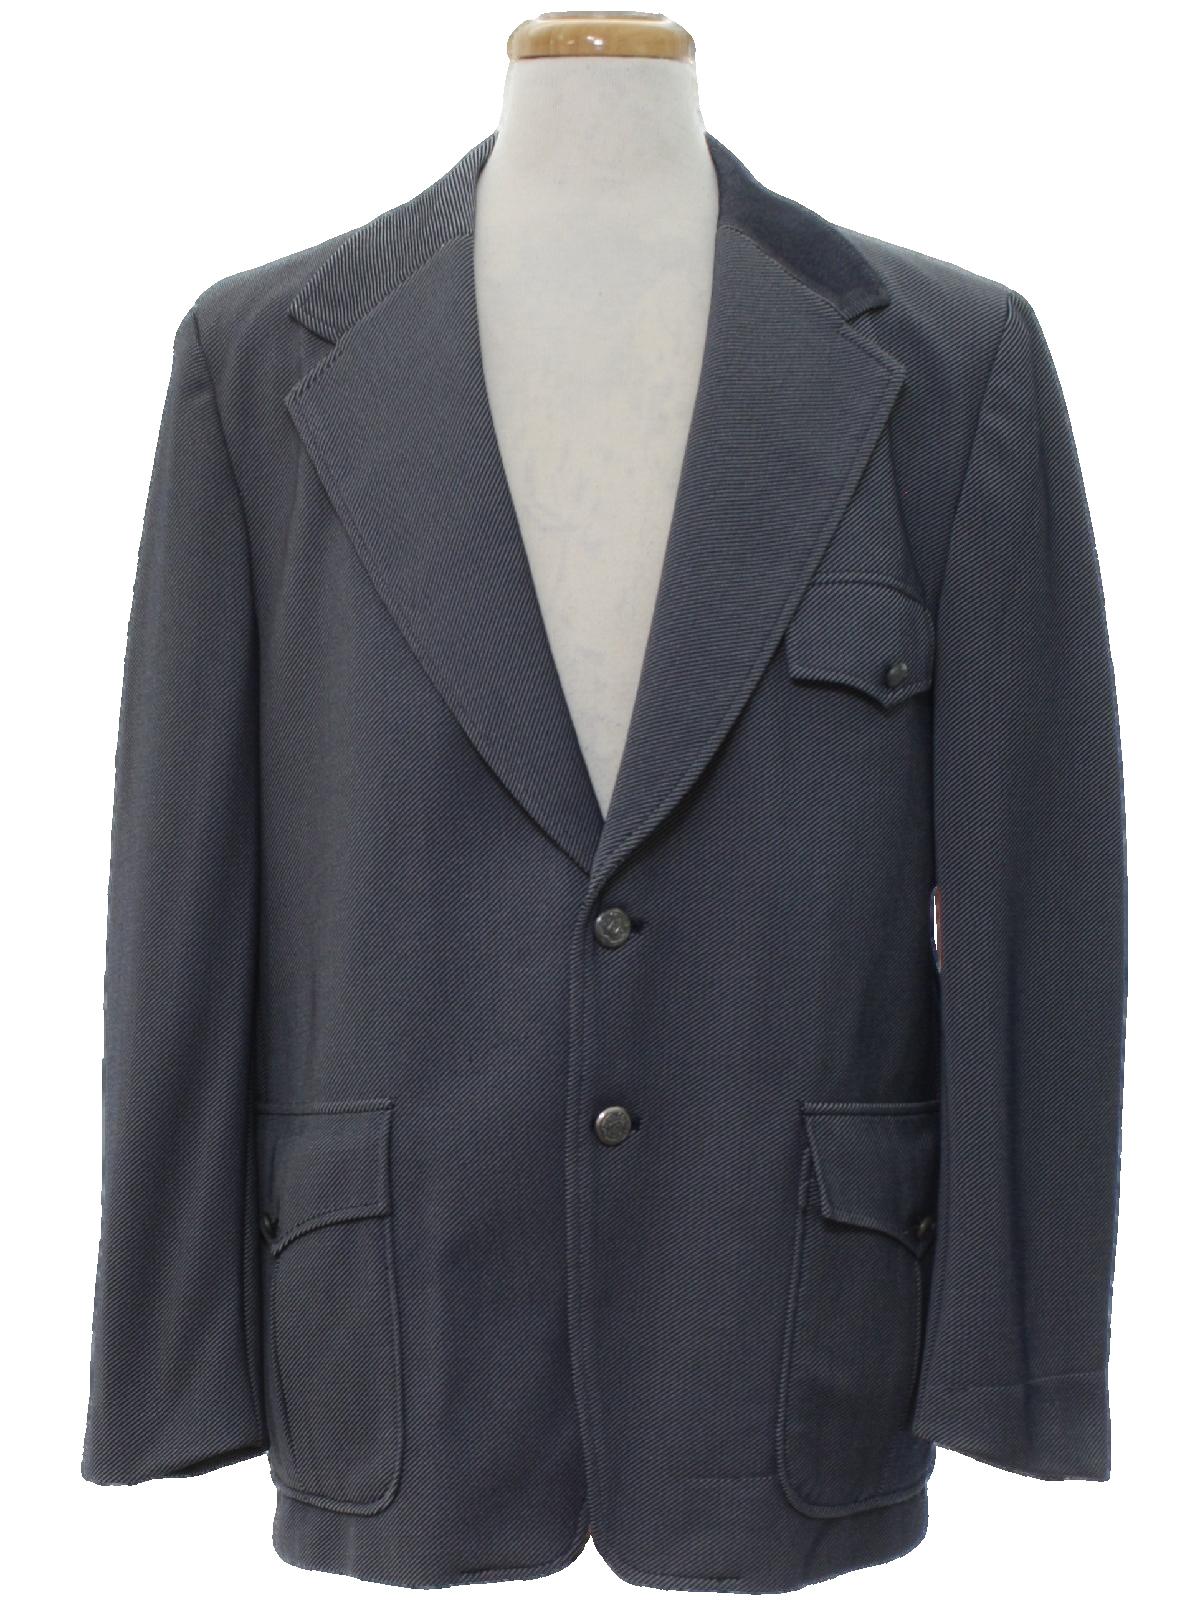 Retro 70s Jacket (Sir Walter) : 70s -Sir Walter- Mens hazy navy blue ...